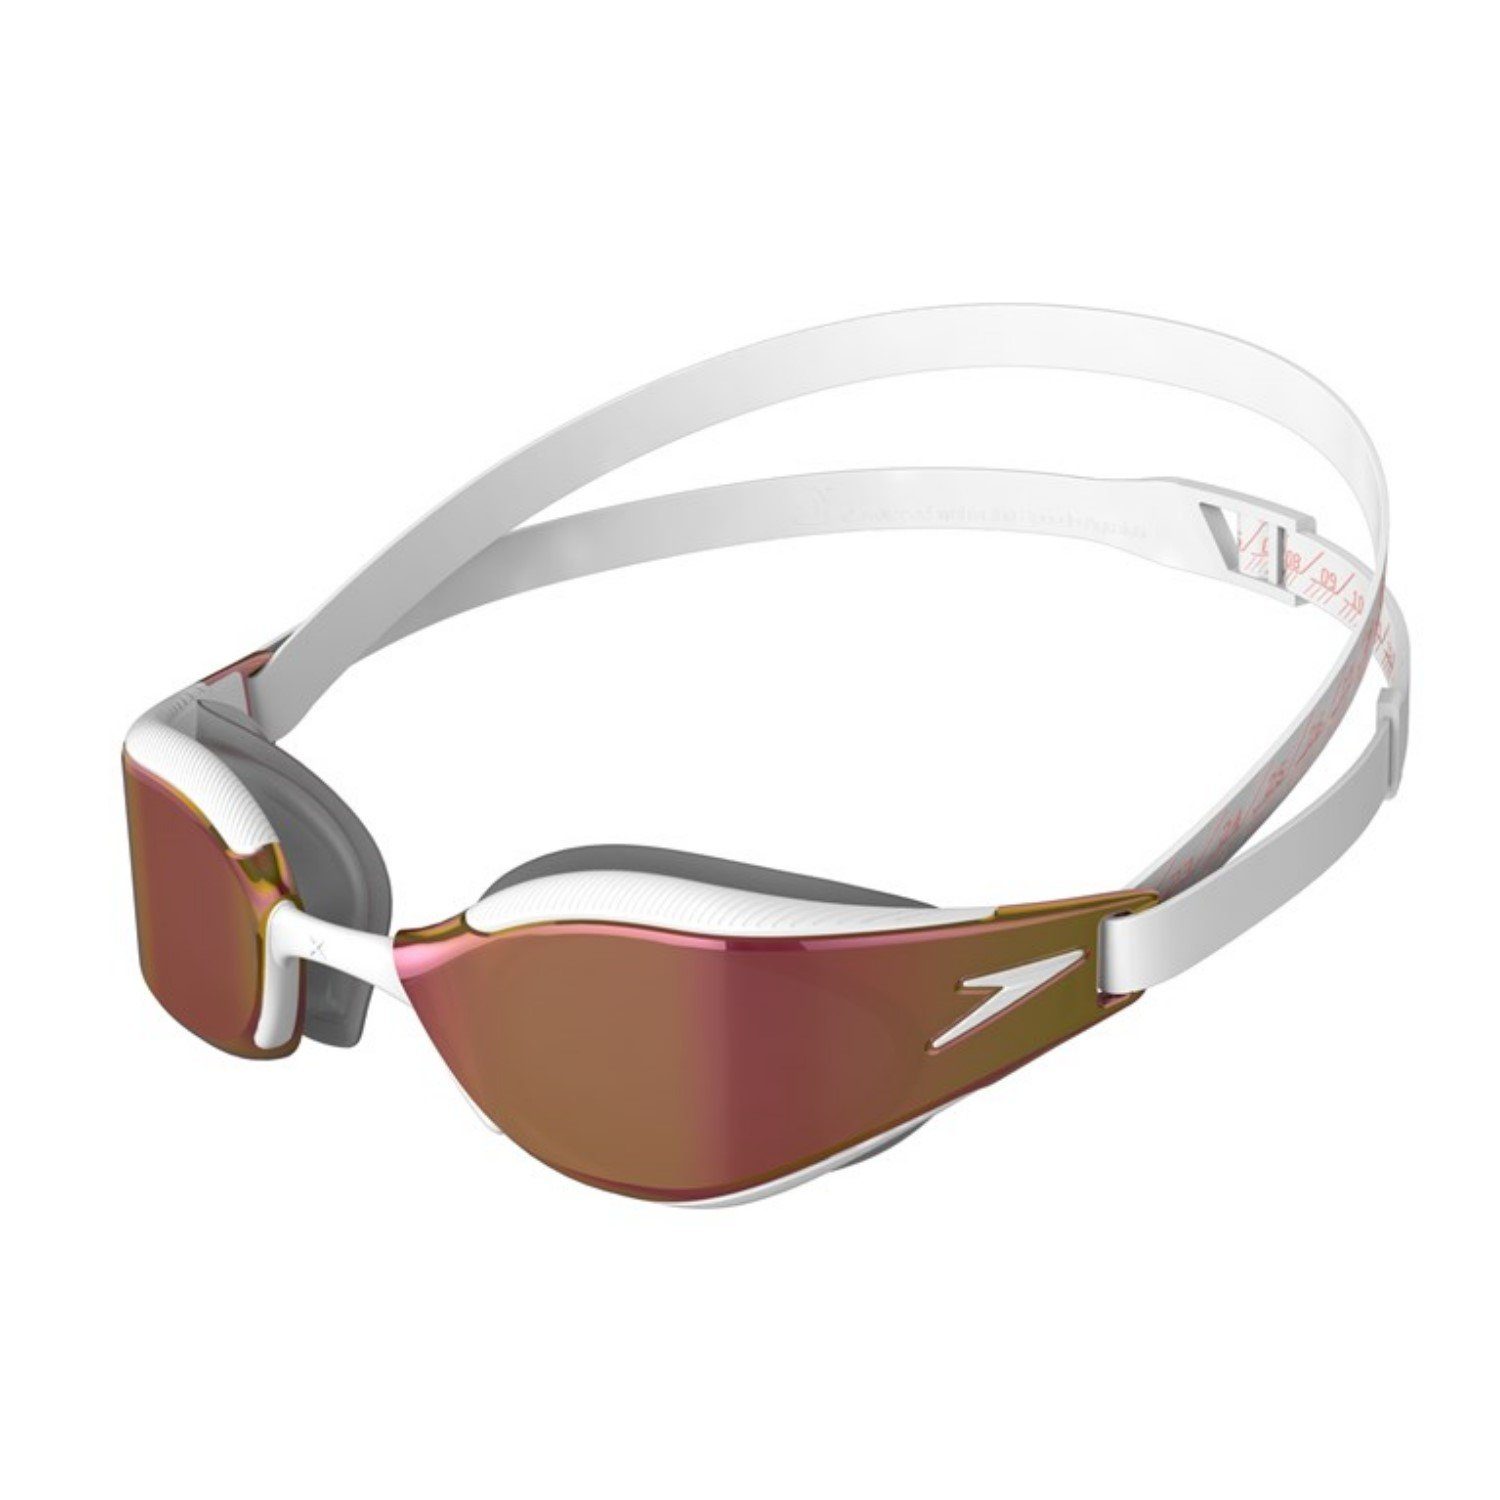 Fastskin Sportbrille Schwimmbrille Hyper Weiß Speedo Mirror Elite